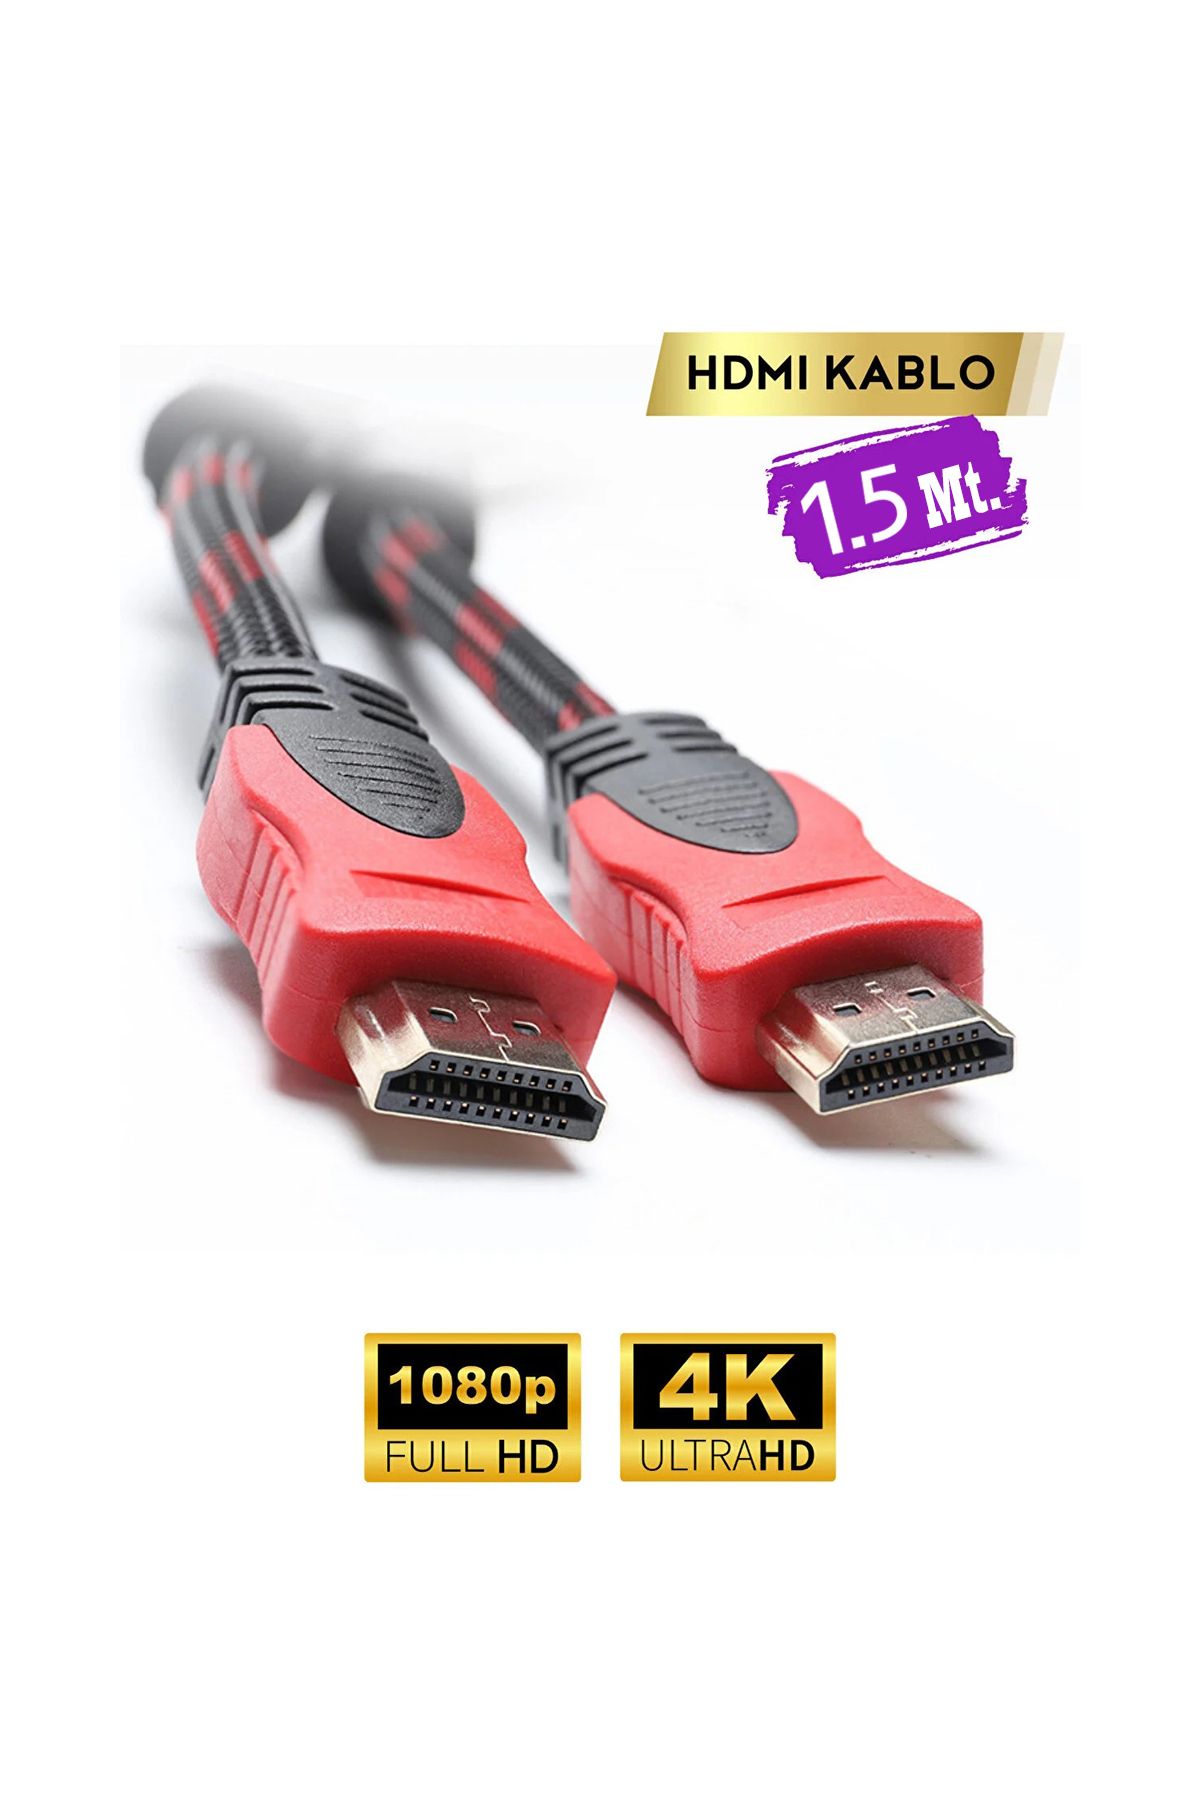 Akay Altın Uçlu Hasır Örgülü Full HD TV Monitör Uydu Alıcısı PC Uyumlu HDMI Kablosu 1.5 mt